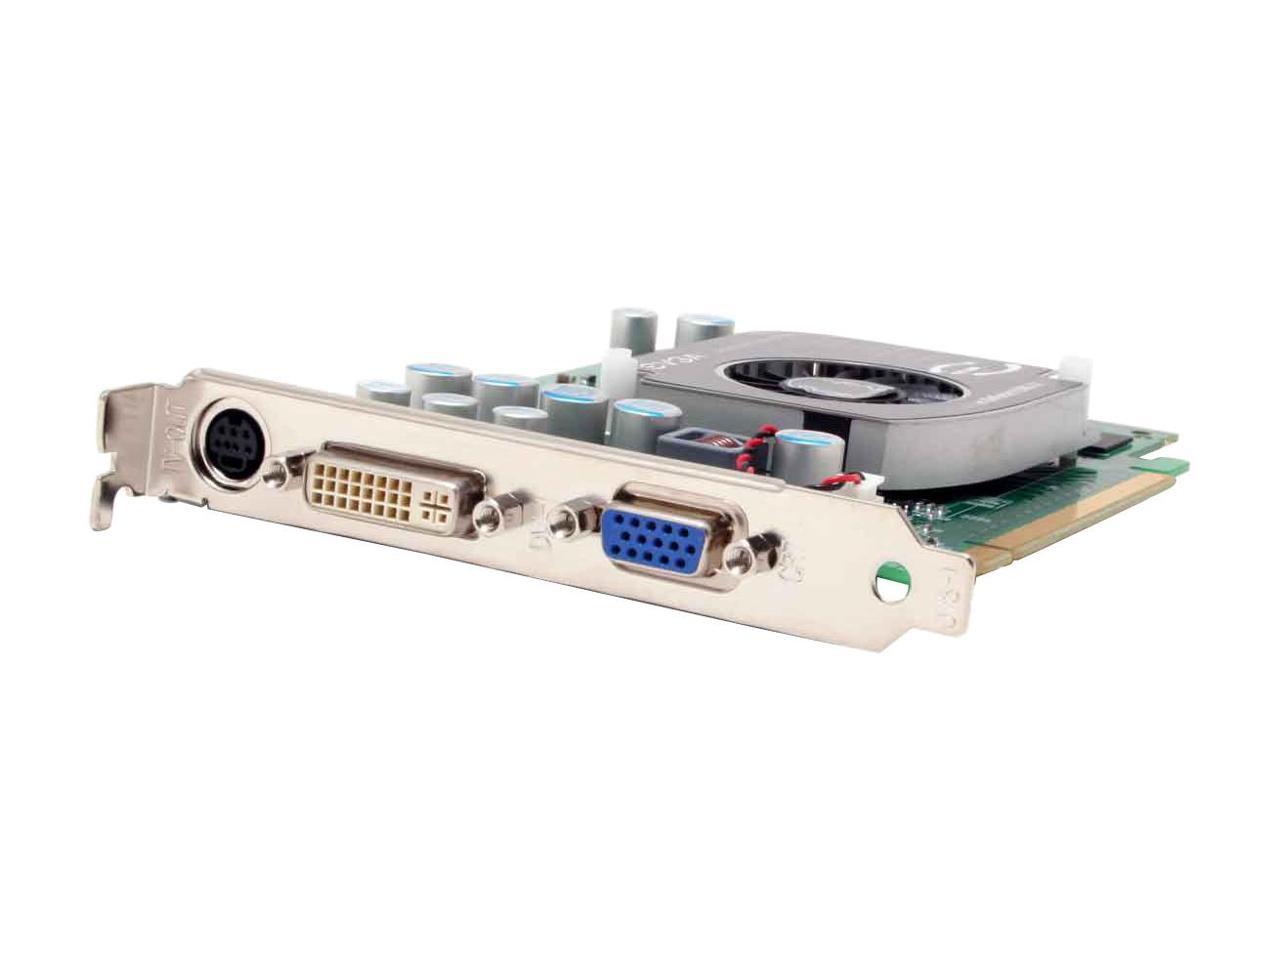 EVGA GeForce 7300GT 256MB GDDR2 PCI Express x16 SLI Support Video Card  256-P2-N443-LX